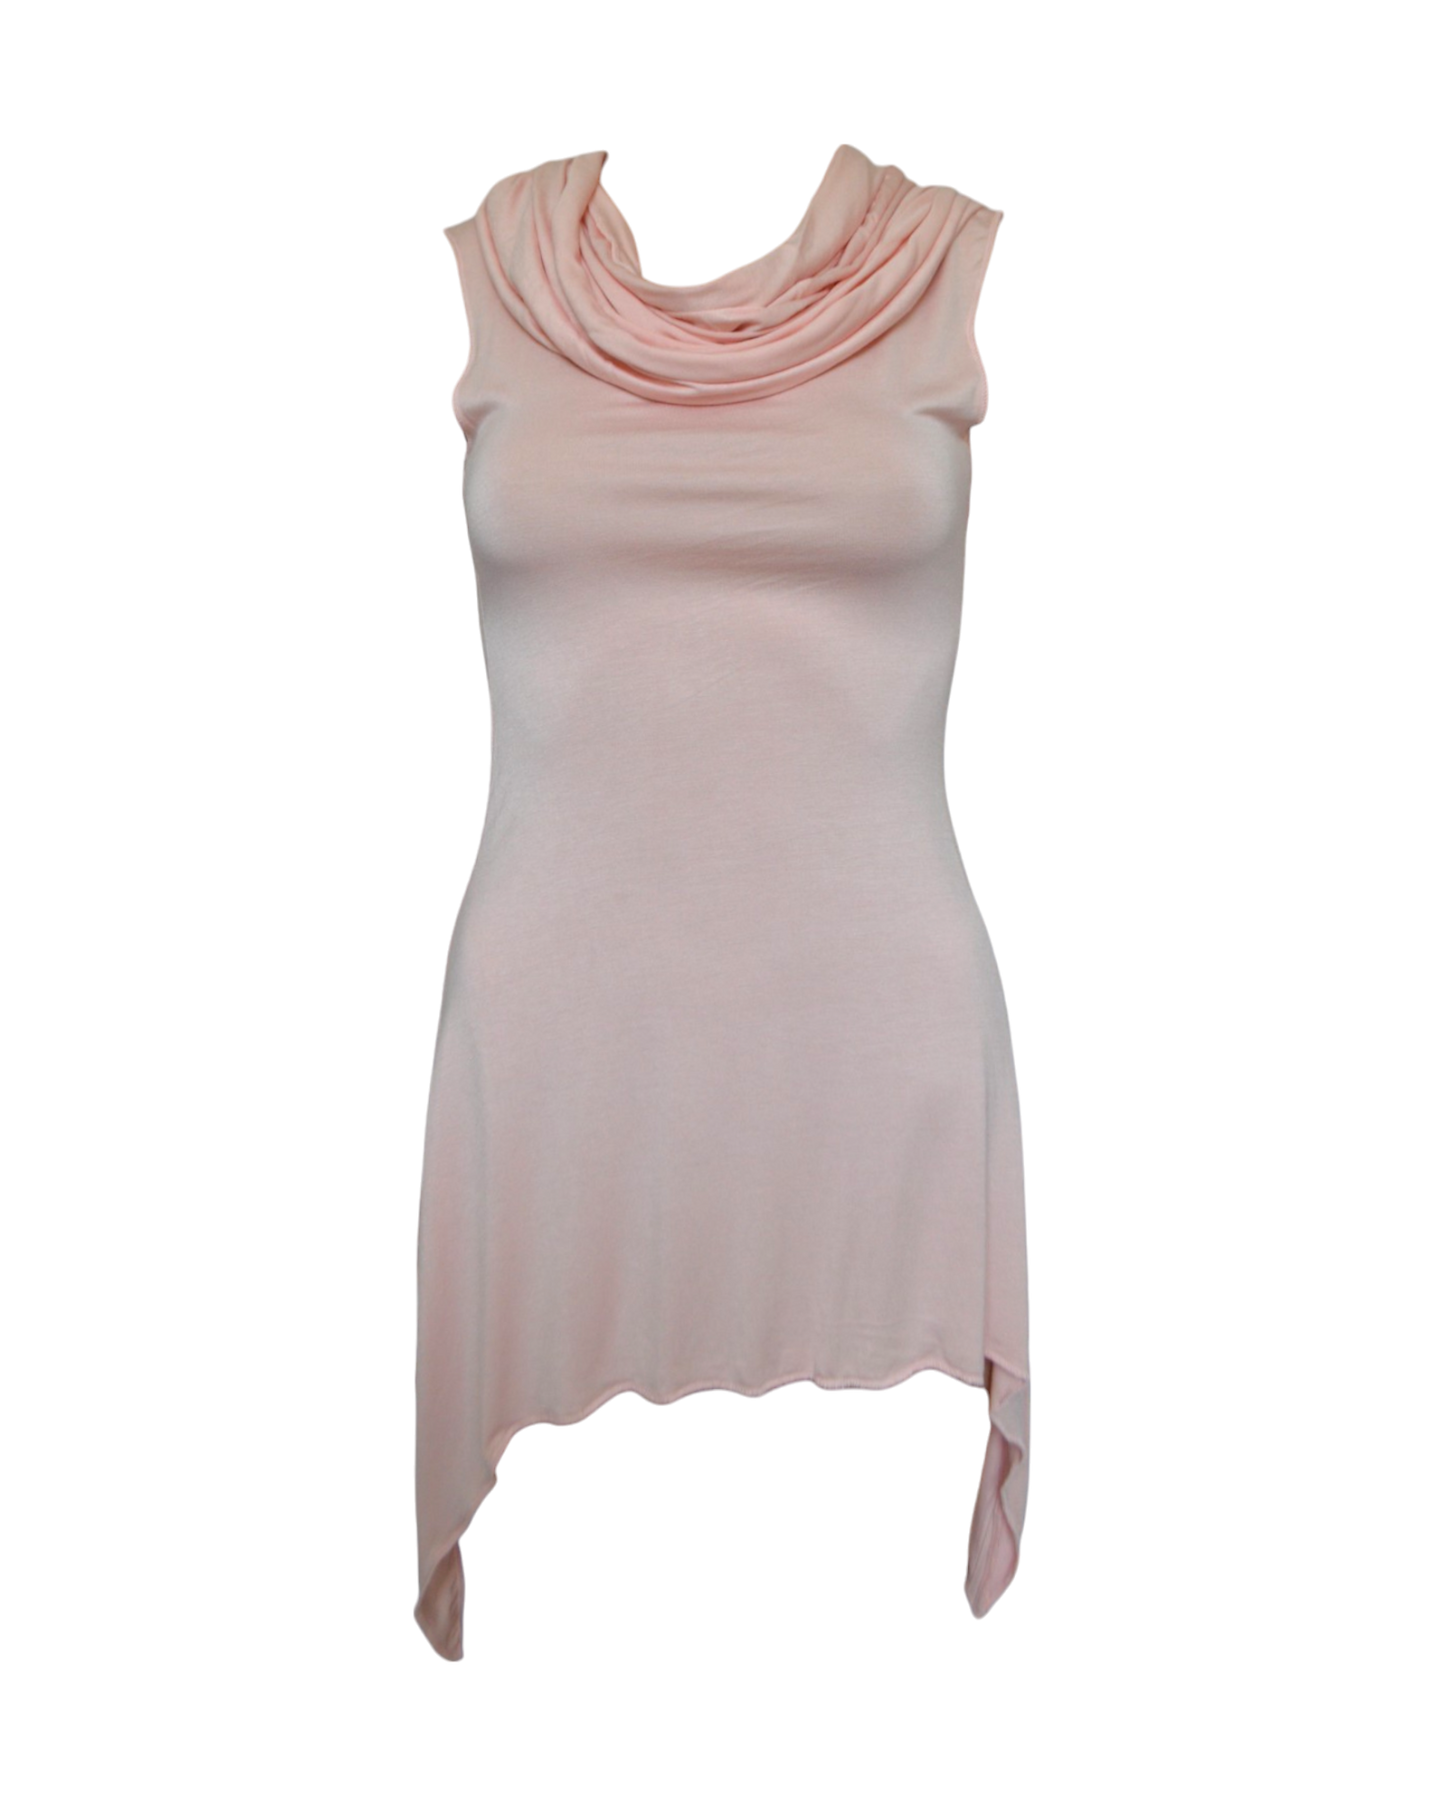 Gladiatrix Mini Dress in Dusty Pink